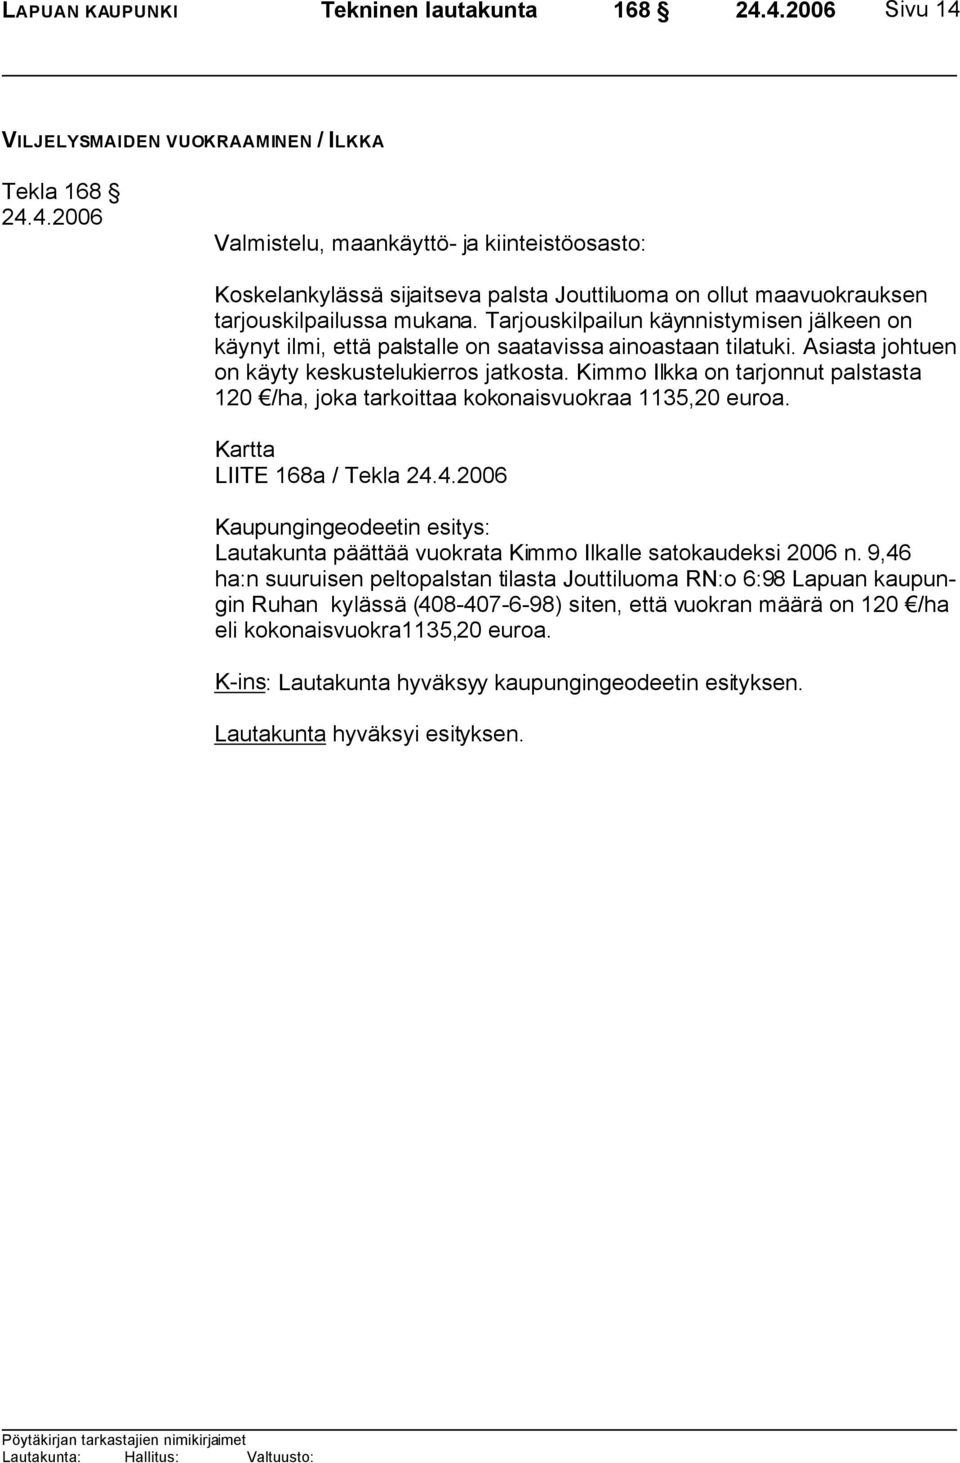 Kimmo Ilkka on tarjonnut palstasta 120 /ha, joka tarkoittaa kokonaisvuokraa 1135,20 euroa.